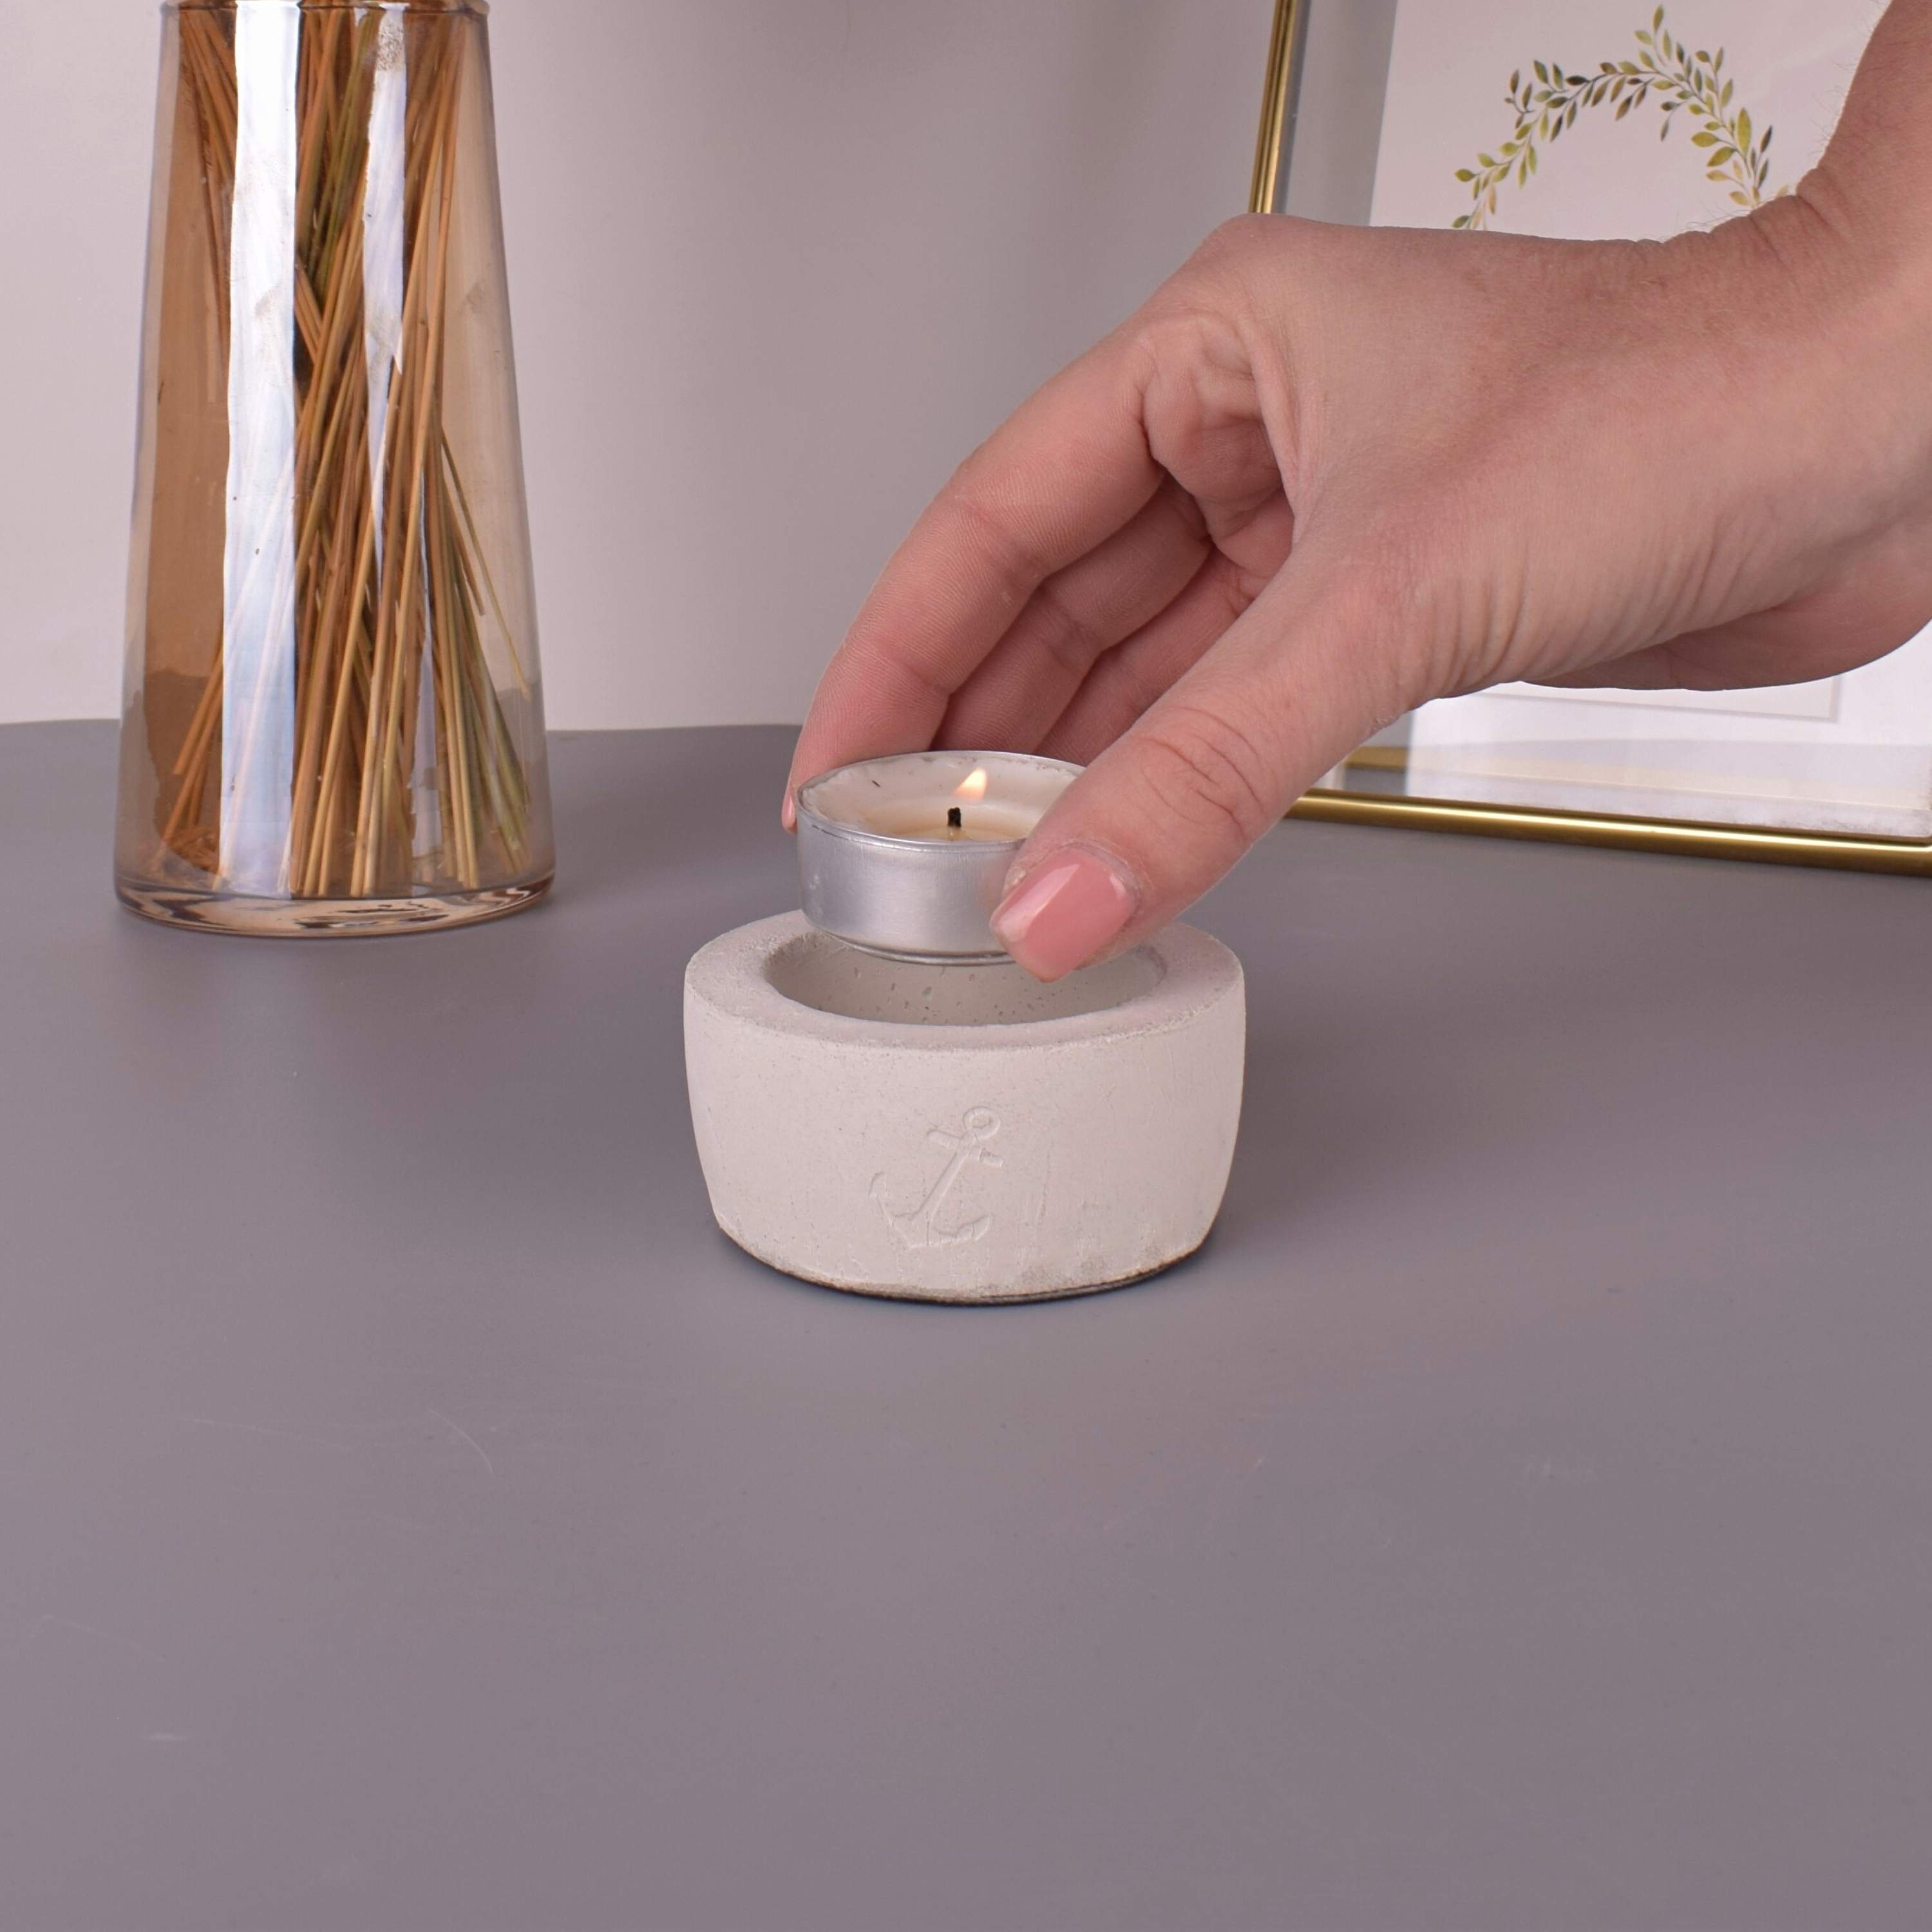 Beton-Design "Anker" TIVENDIS Teelichthalter (Packung) Teelichthalter weiß